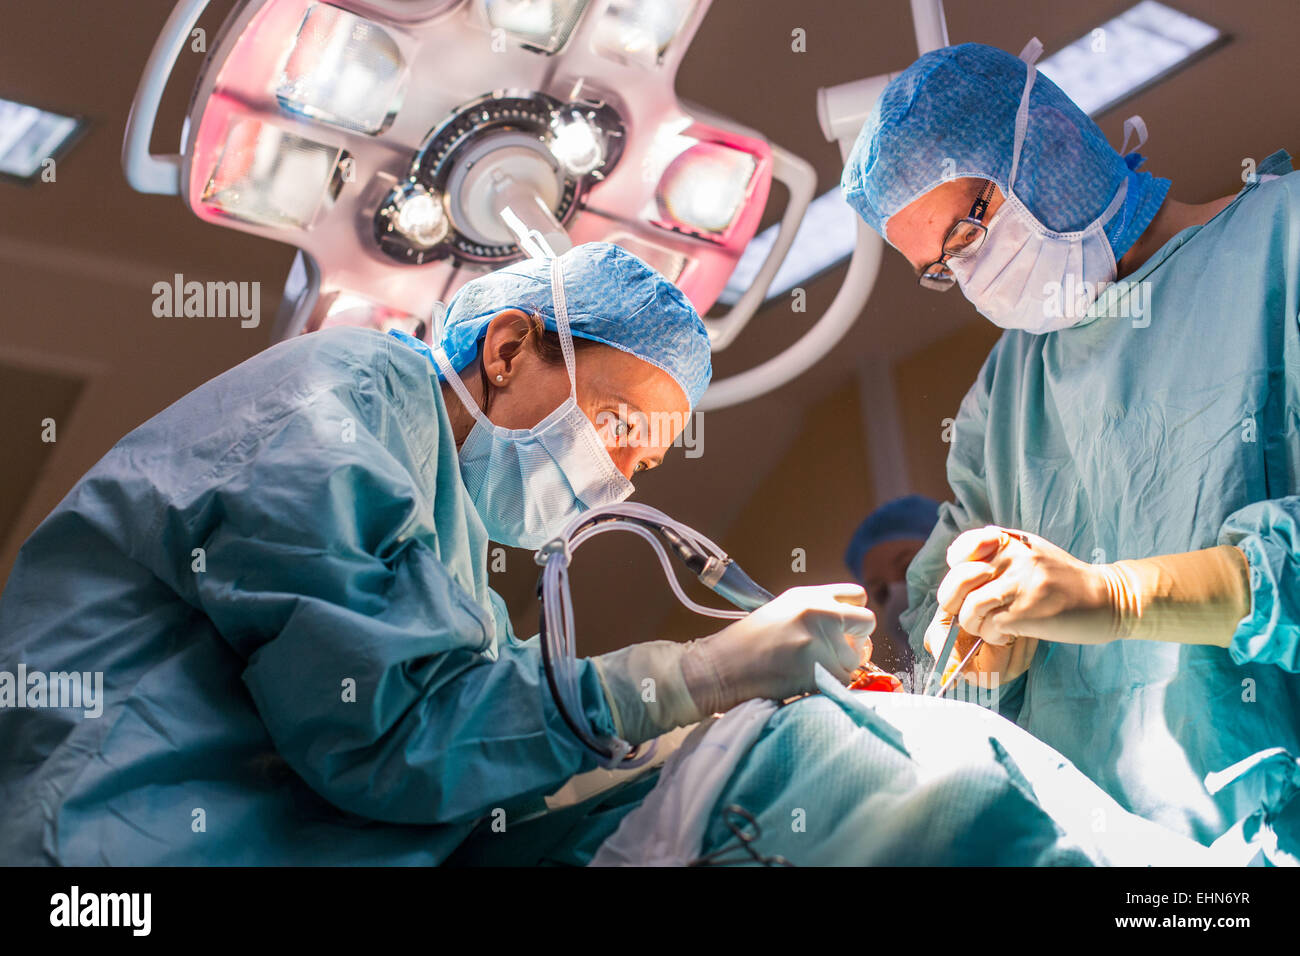 Chirurgo di eseguire impianto cocleare chirurgia, un'operazione di impiantazione di un piccolo dispositivo elettronico utilizzato per fornire un senso di suono a una persona non udente, ospedale di Limoges, Francia. Foto Stock